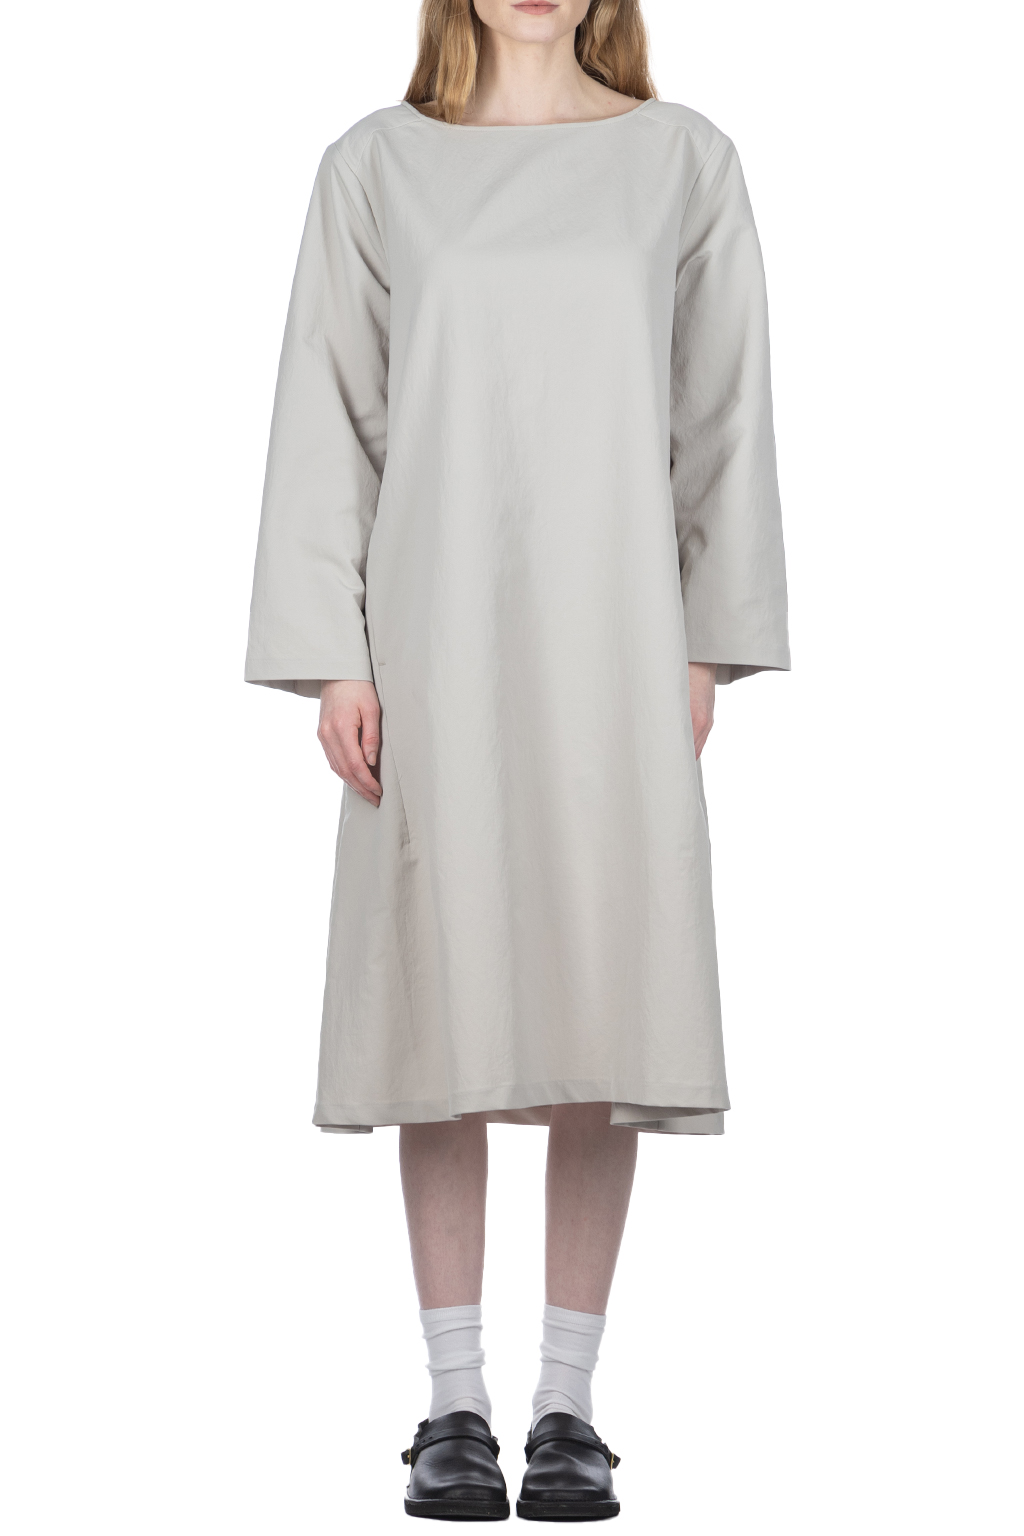 Nanamica (NAN) - ALPHADRY  Dress - Pale Gray